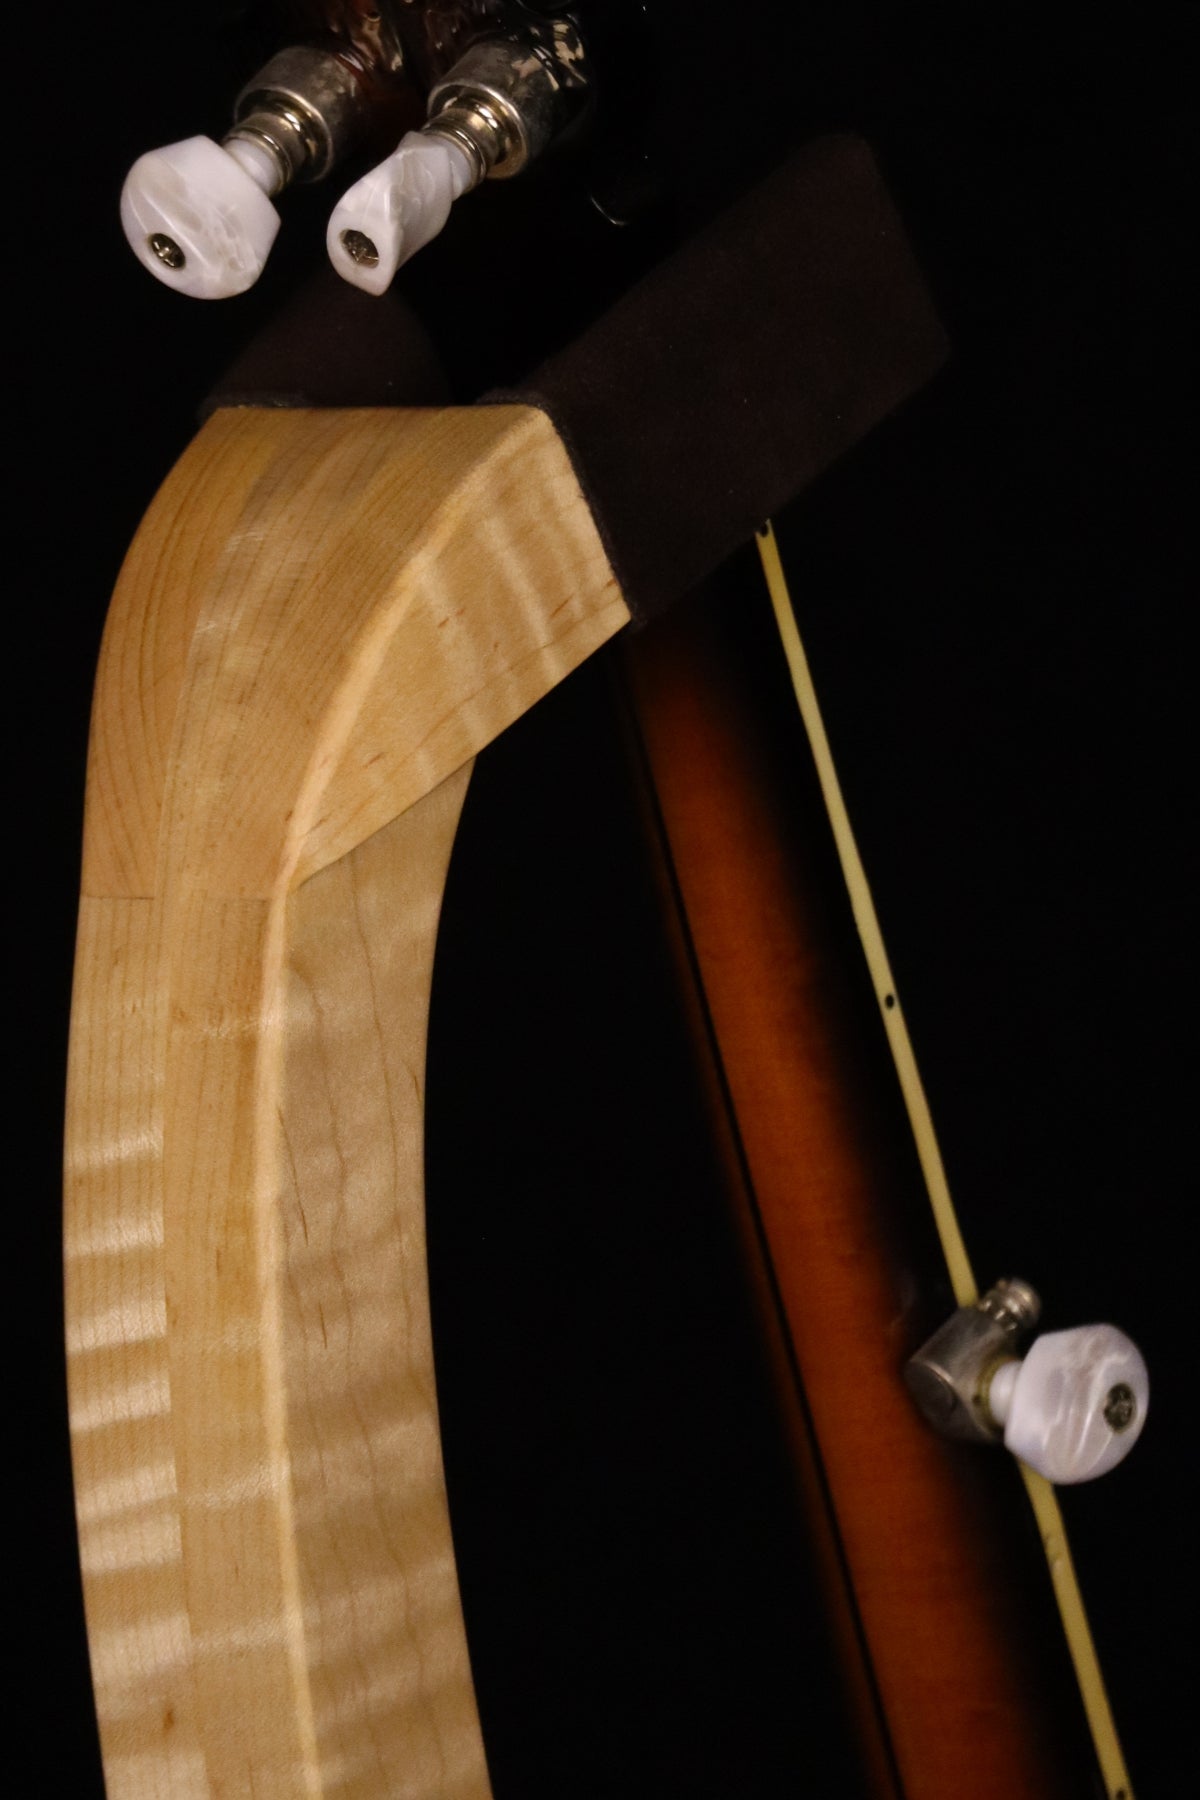 Folding curly maple wood banjo floor stand yoke detail image with Alvarez banjo